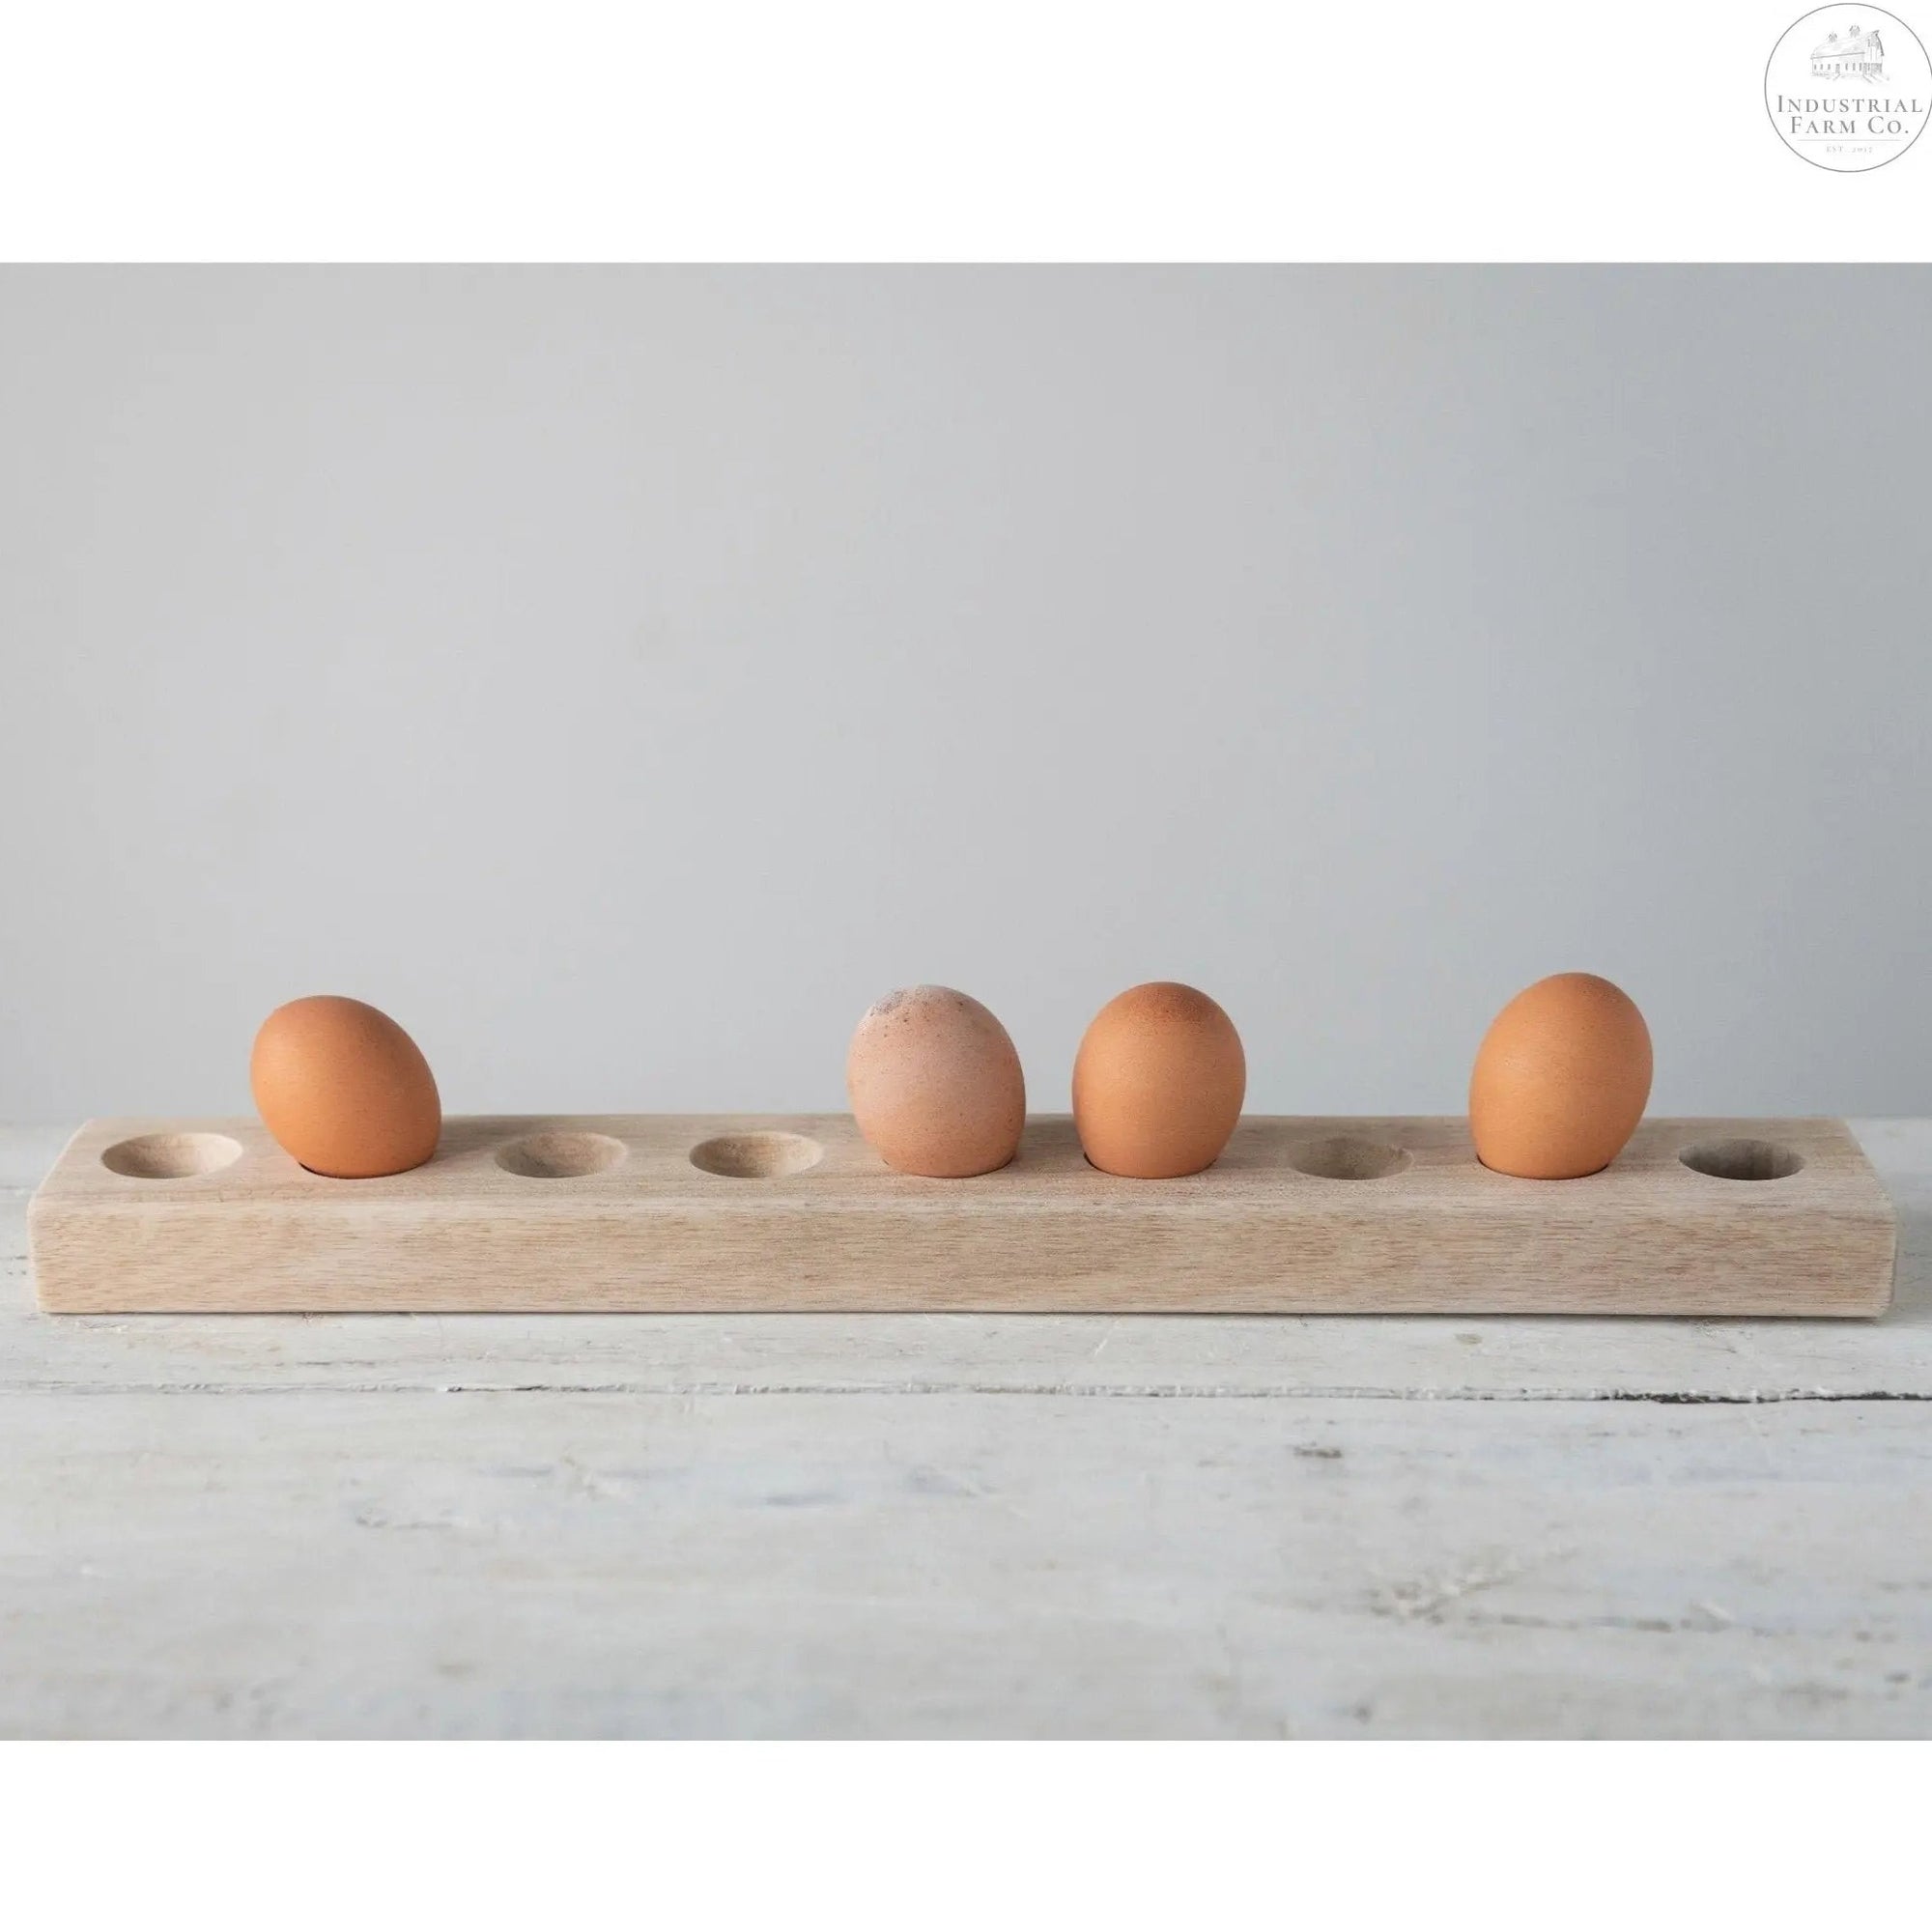 Unique Mango Wood Egg Holder  Default Title   | Industrial Farm Co